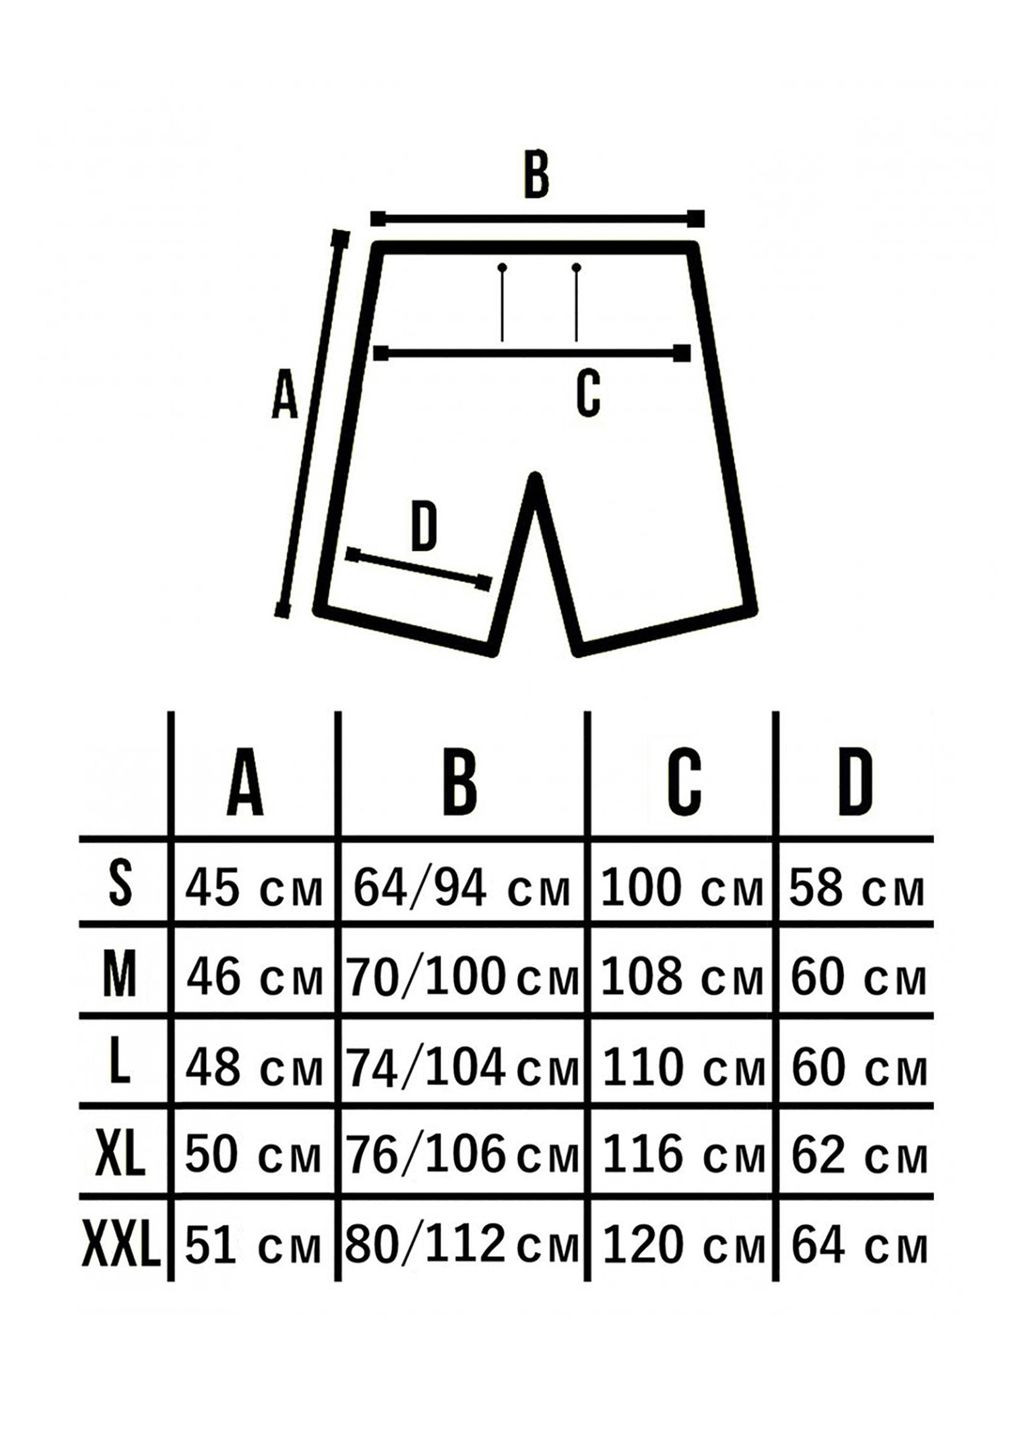 Мужские шорты dark grafite Clirik Custom Wear (266626027)